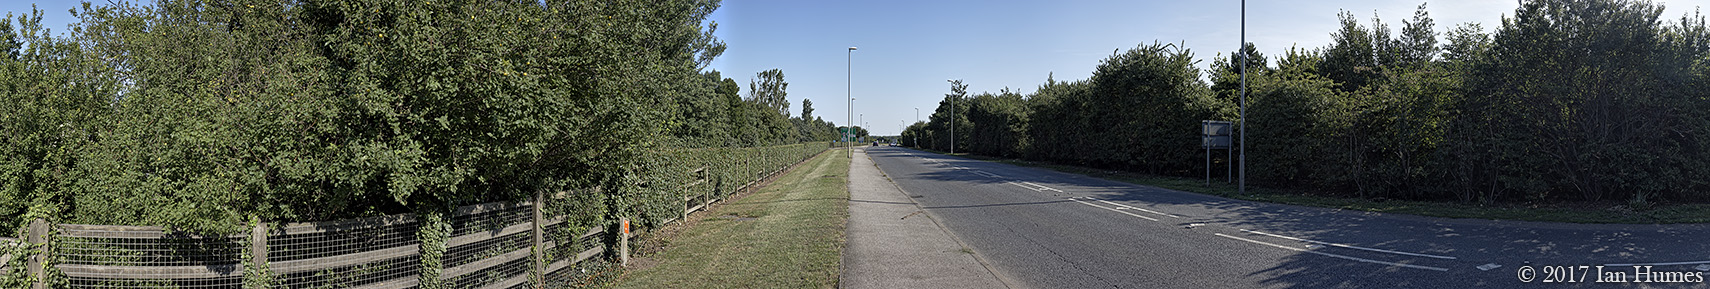 Newmarket Road - Cambridgeshire